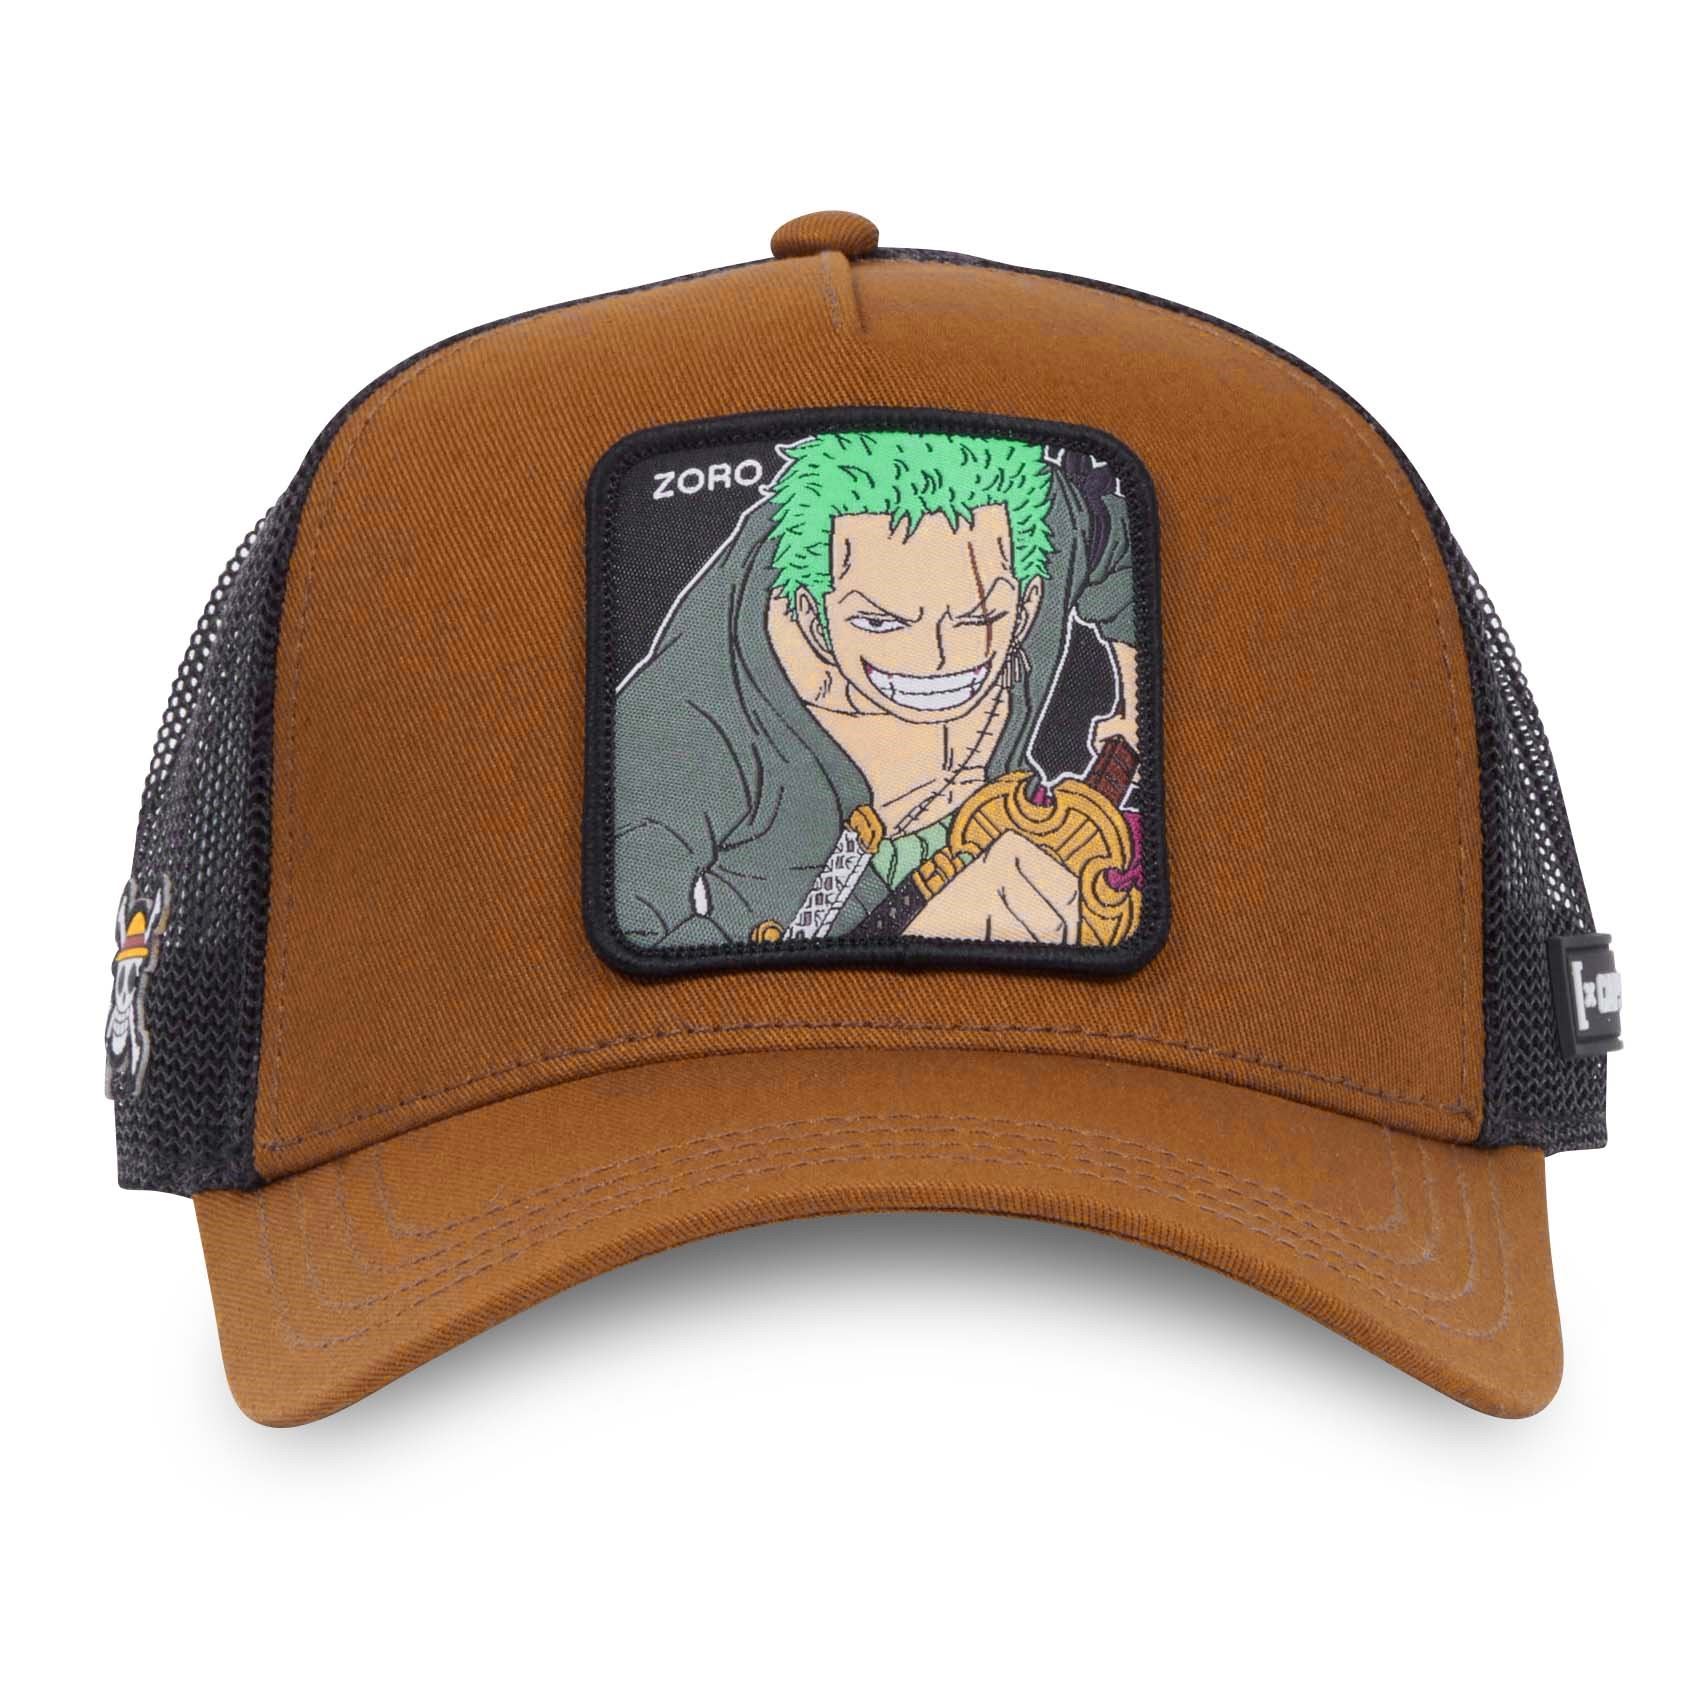 Zoro One Piece Brown Trucker Cap Capslab